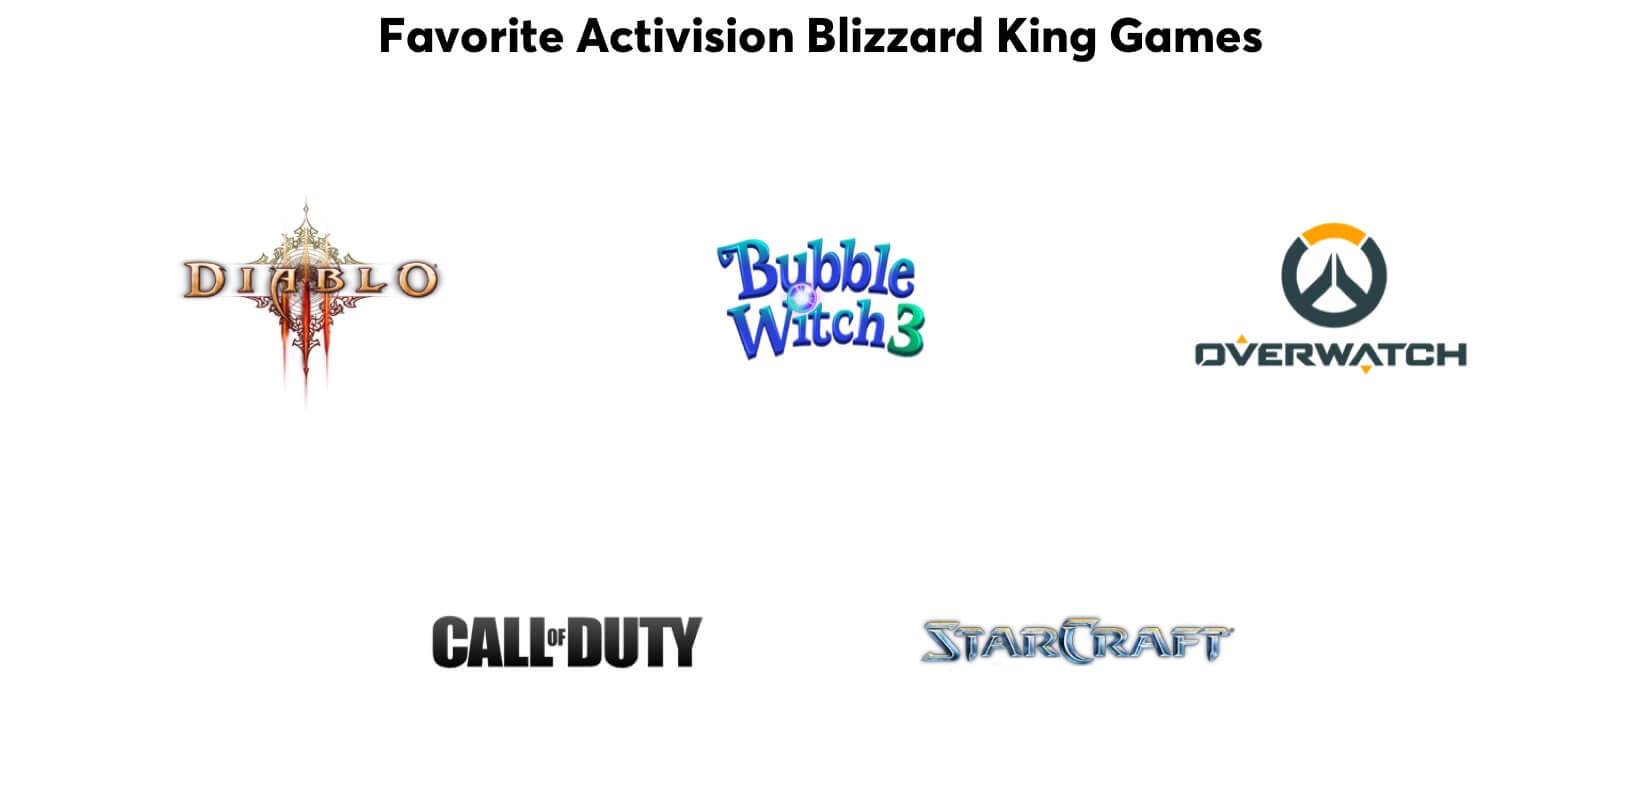 Giochi preferiti dai Neutrali: Diablo, Bubble Witch, Overwatch, Call of Duty e StarCraft